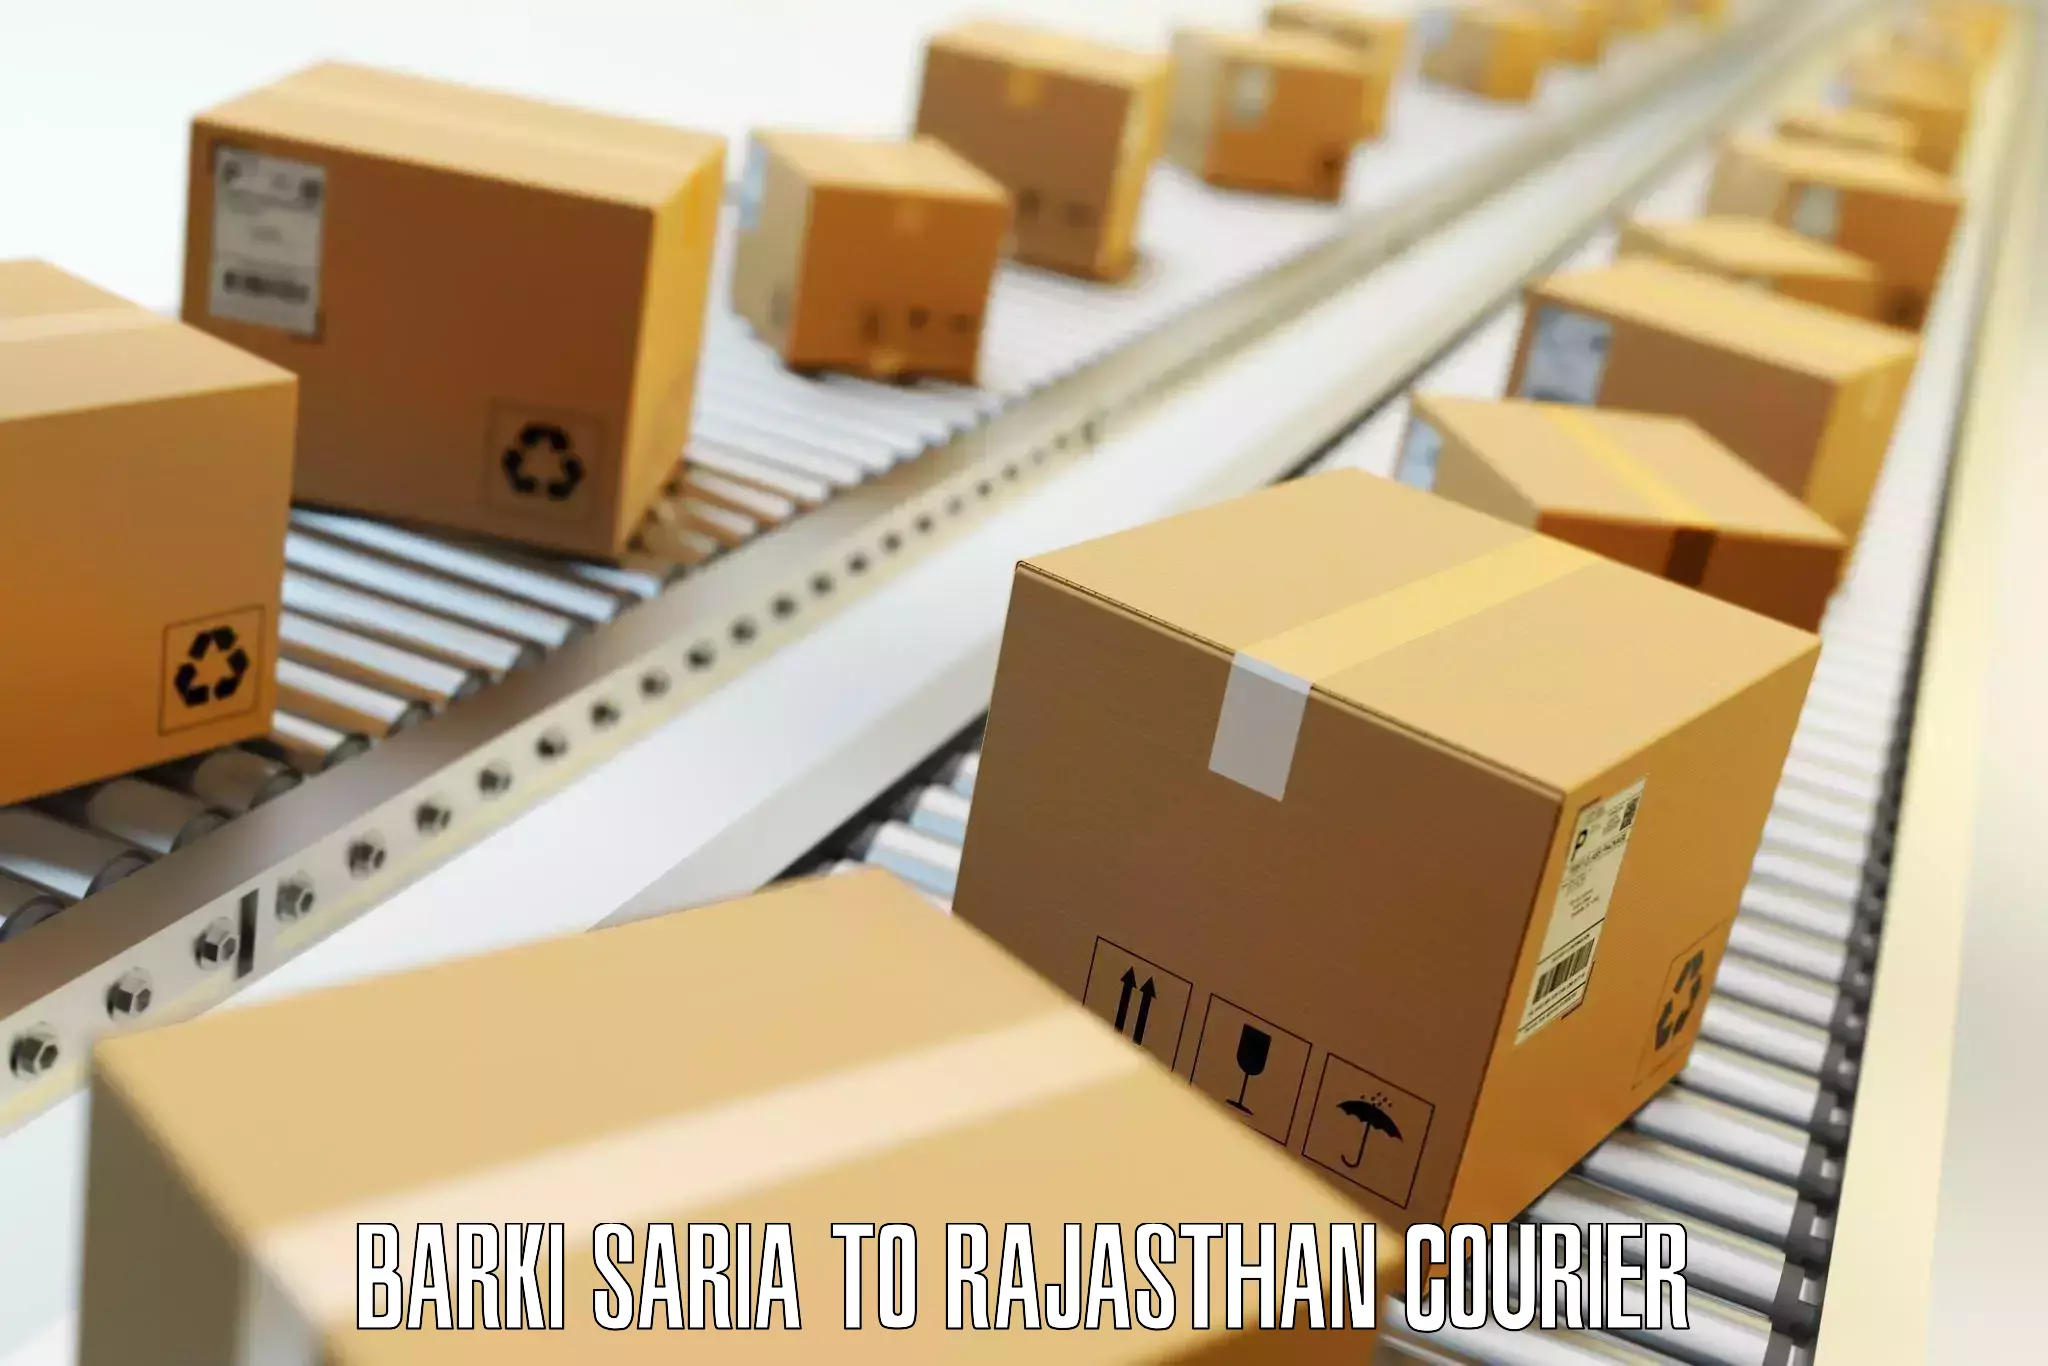 Same day baggage transport Barki Saria to Rajasthan